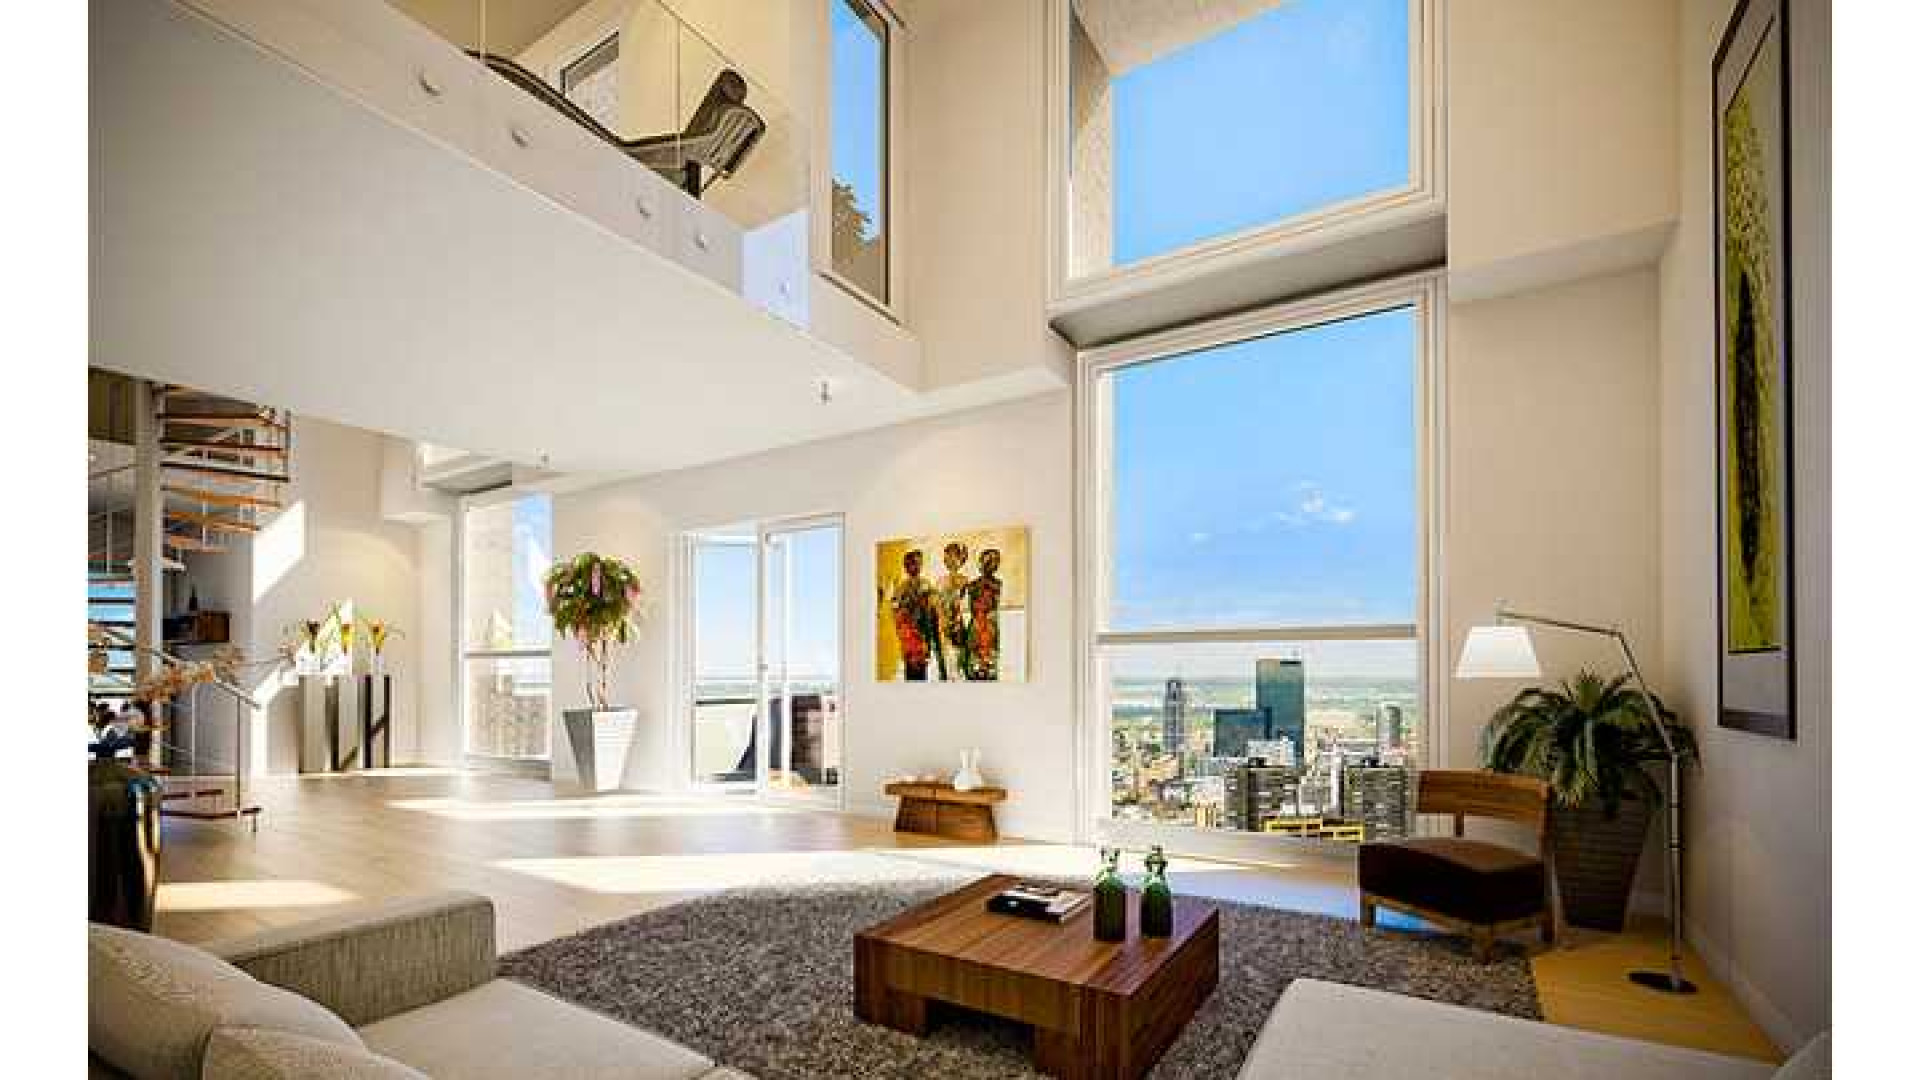 Dit is het enorm luxe appartement van Memphis Depay. Zie foto's